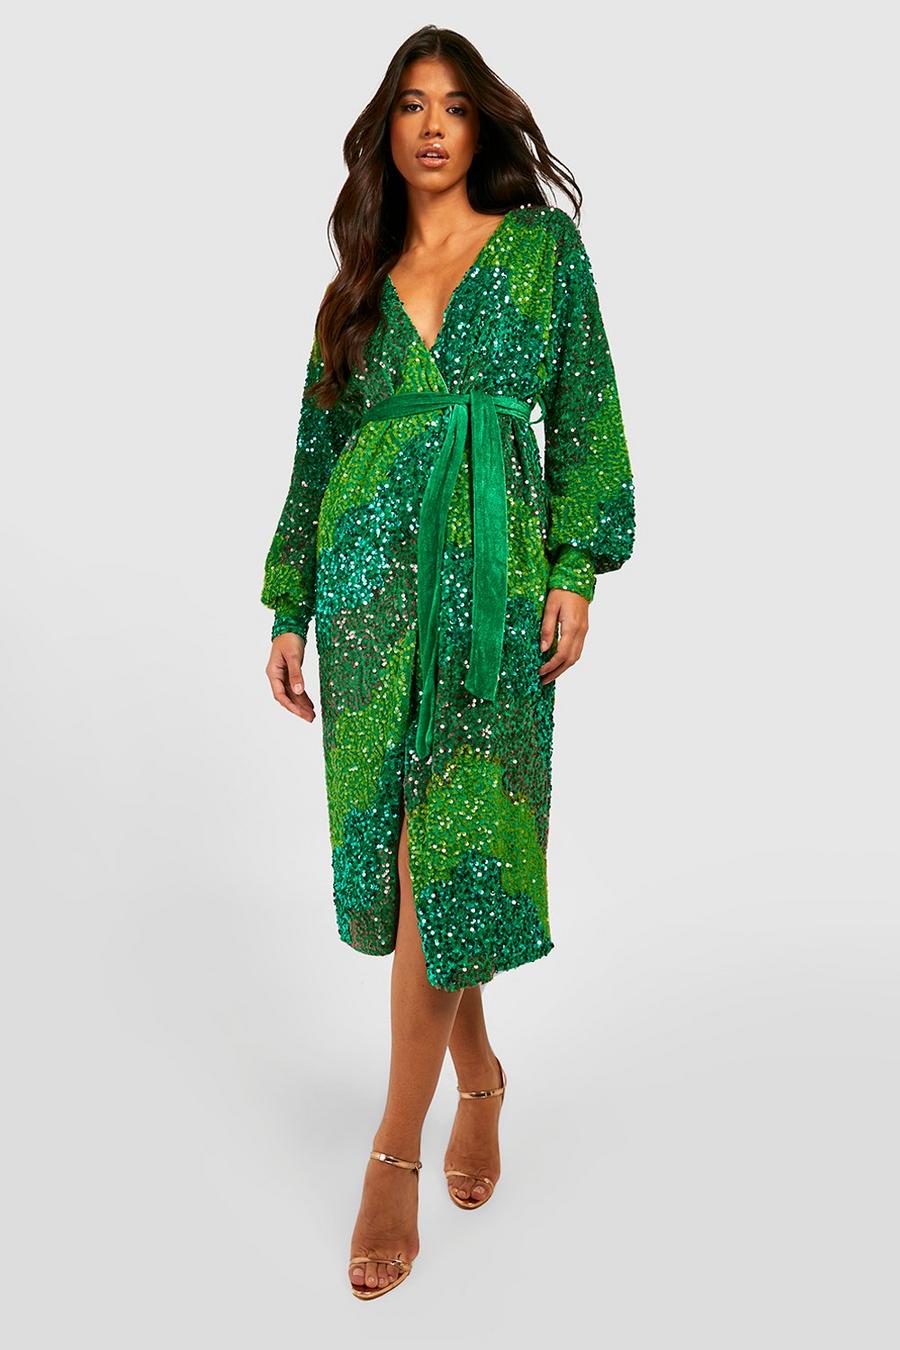 ירוק שמלת מעטפת עם פייטים, פאנל וחגורה, לנשים גבוהות  image number 1